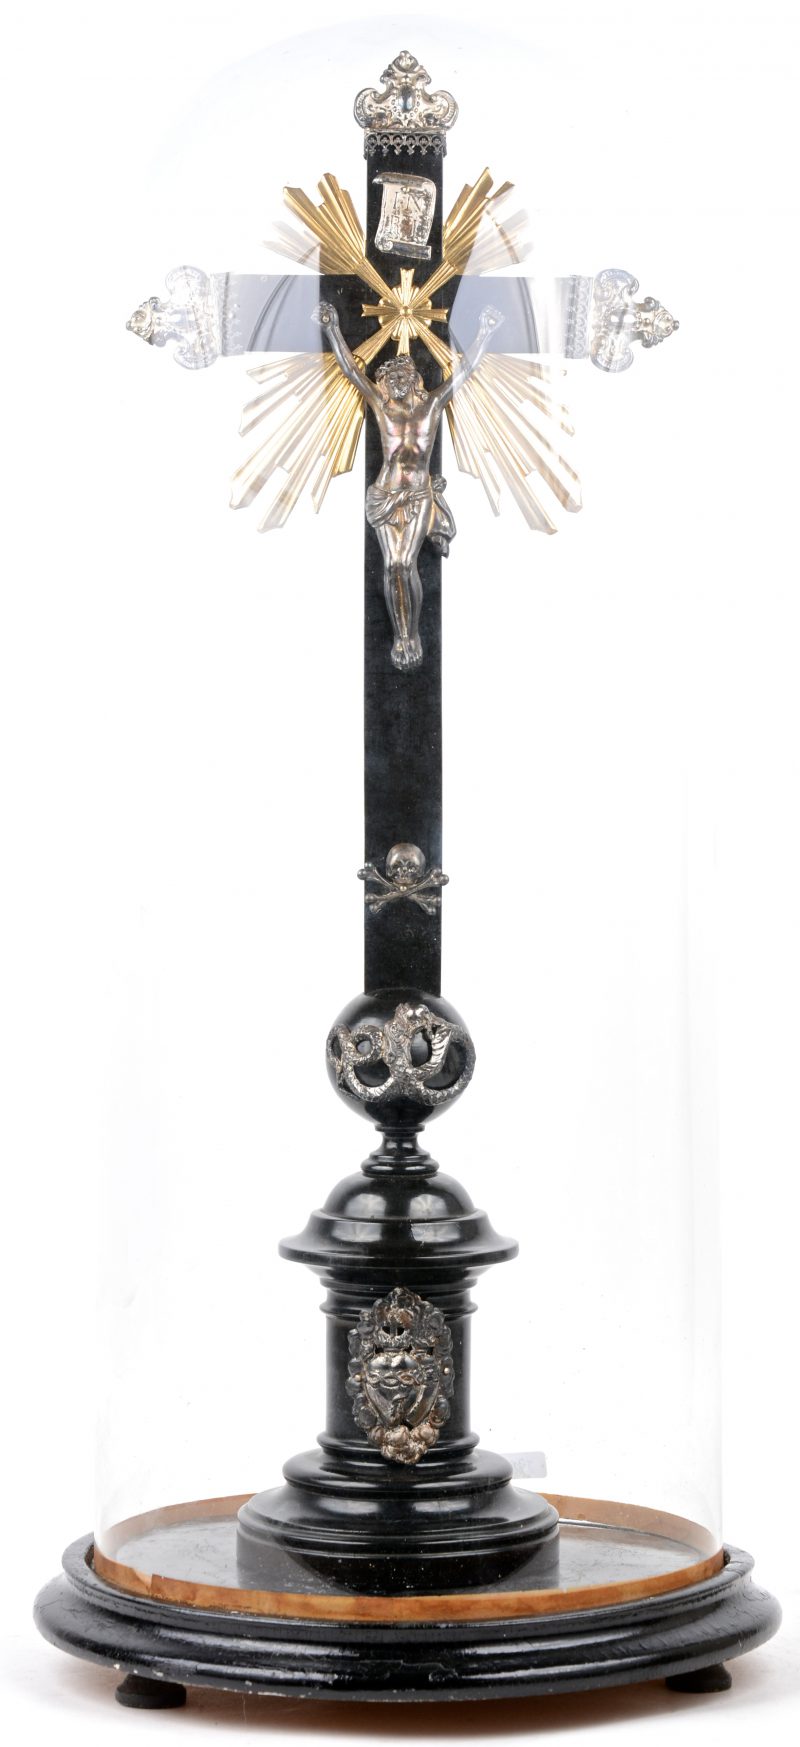 Een gedraaid houten kruisbeeld met zilveren corpus en monturen en onder stolp. De zilveren monturen tijdperk barok.